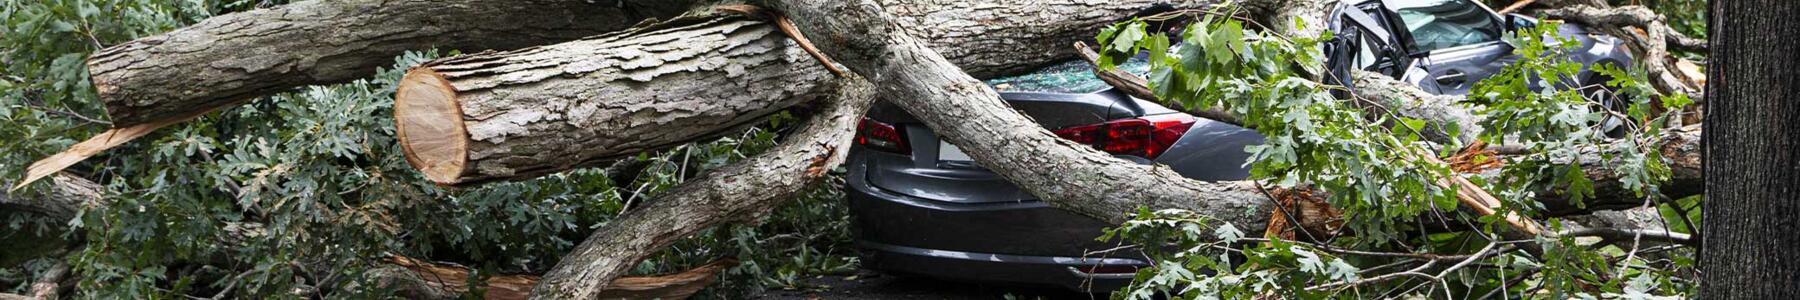 Sturmschäden an Haus & Auto – Welche Versicherung zahlt jetzt?